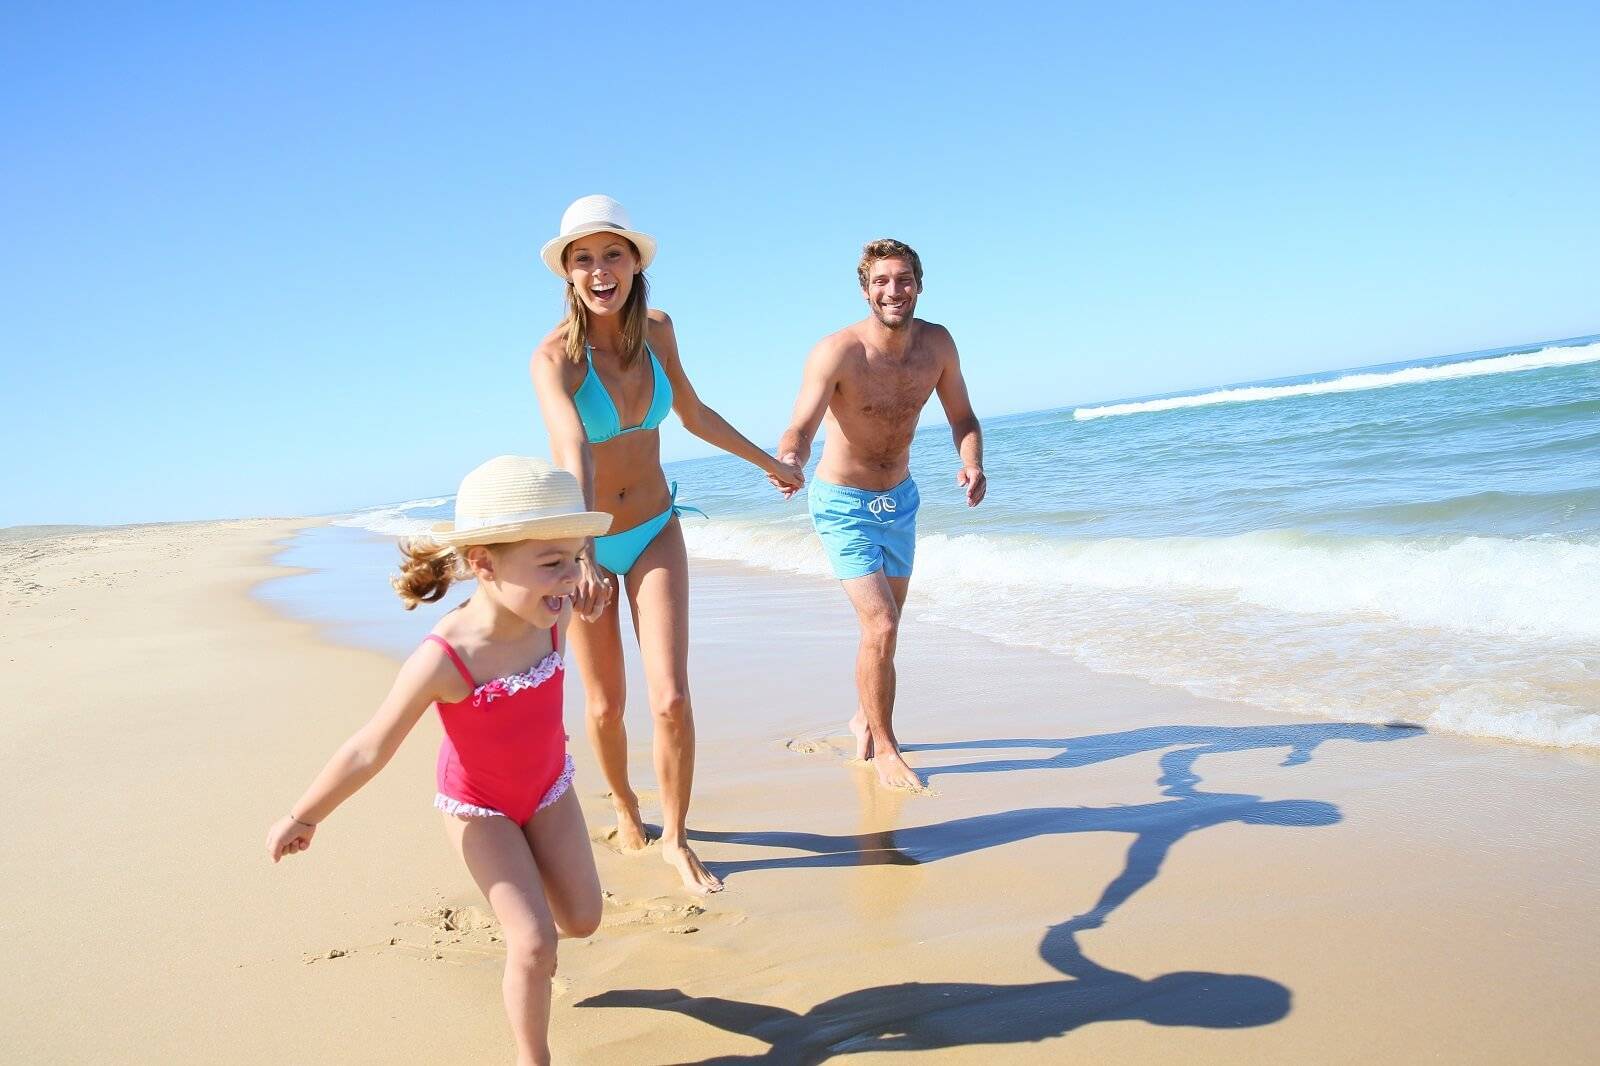 Какой курорт турции выбрать для семейного отдыха с детьми?